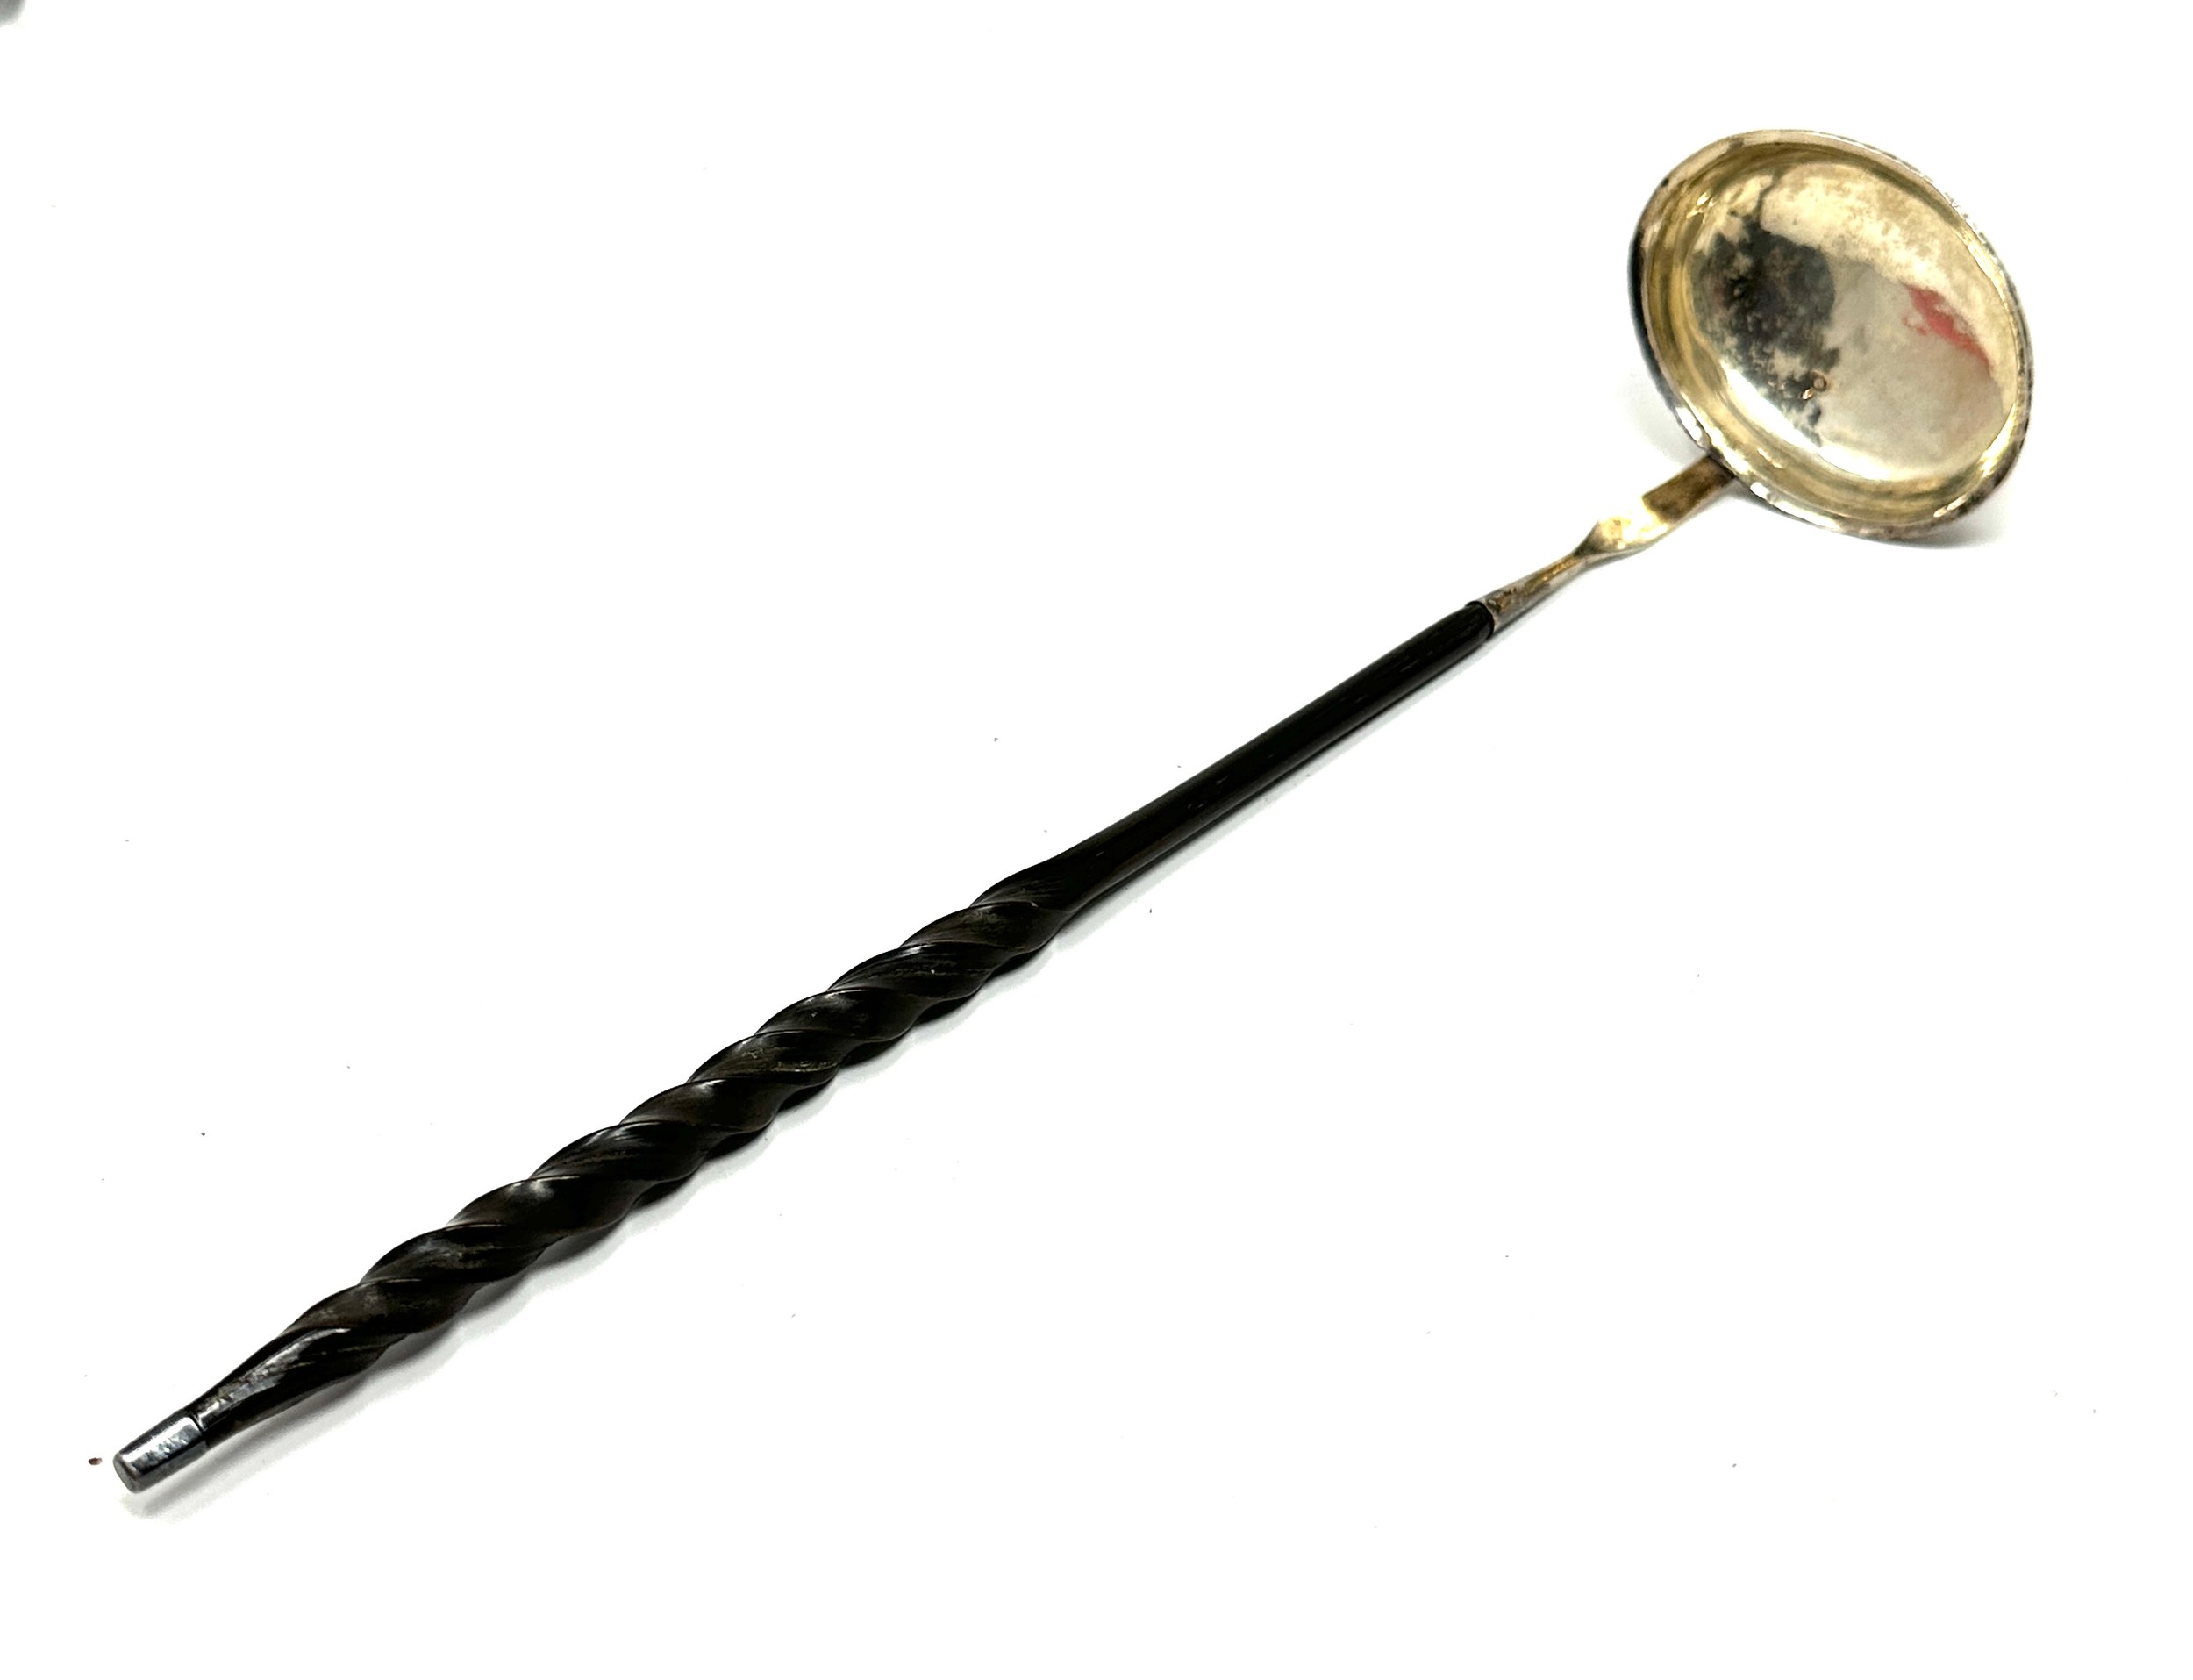 Antique silver toddy ladle